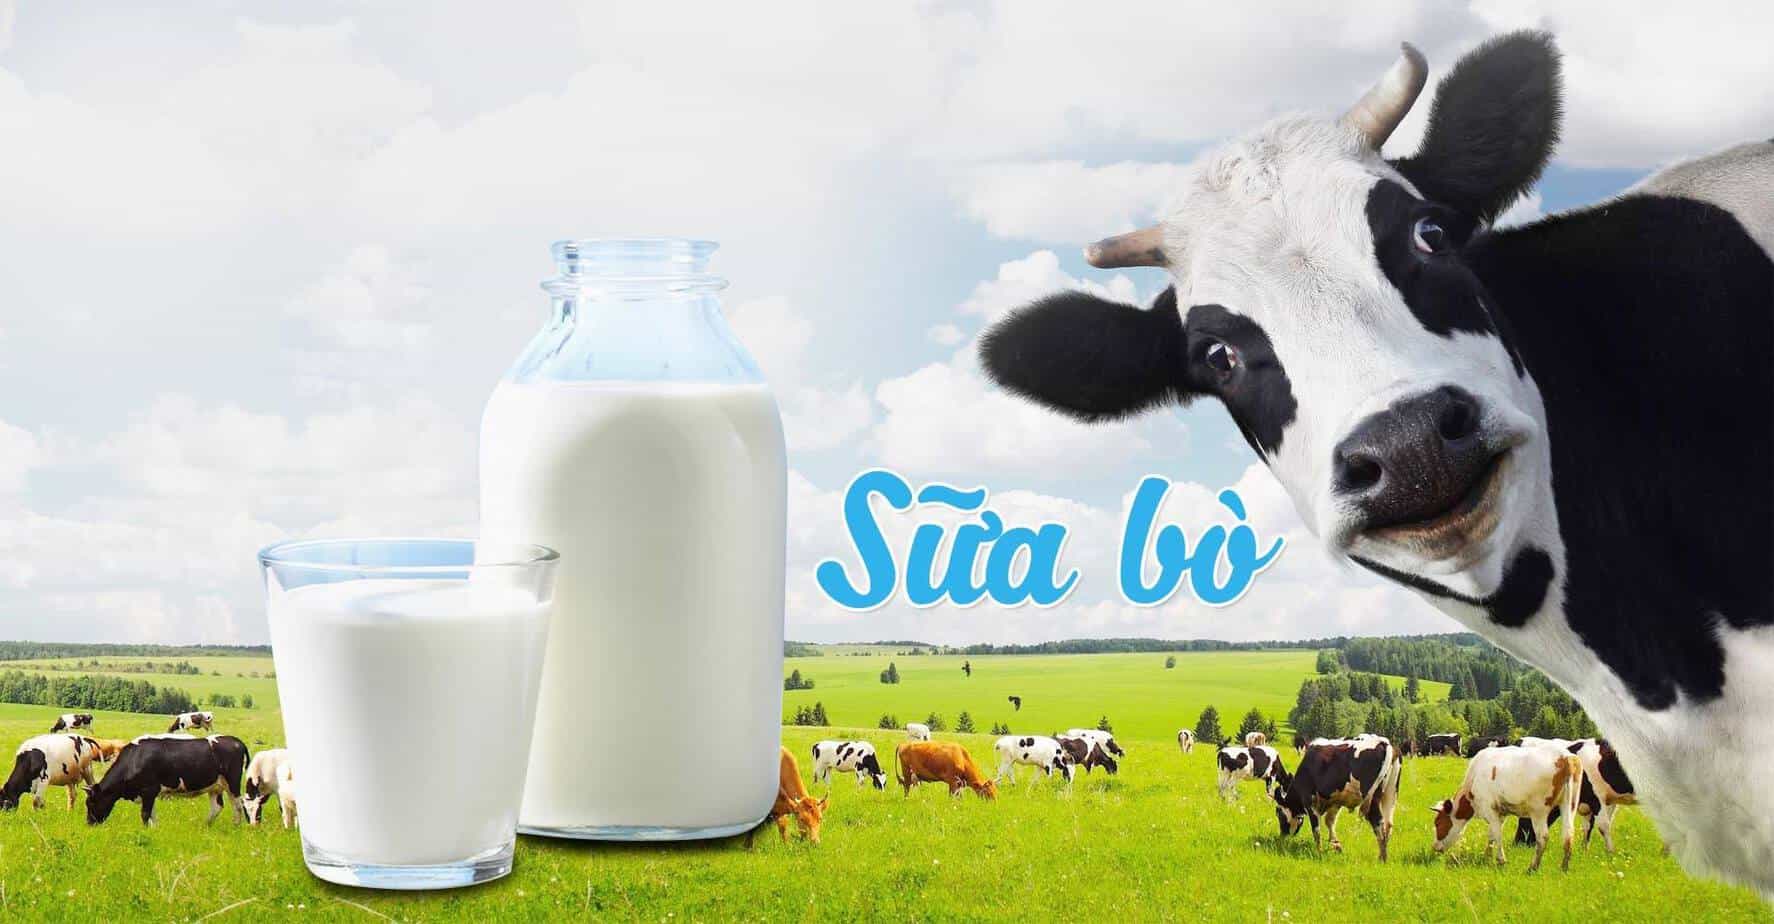 khi trẻ tiêu hoá sữa bột dù cả hai loại đều chế biến từ sữa bò